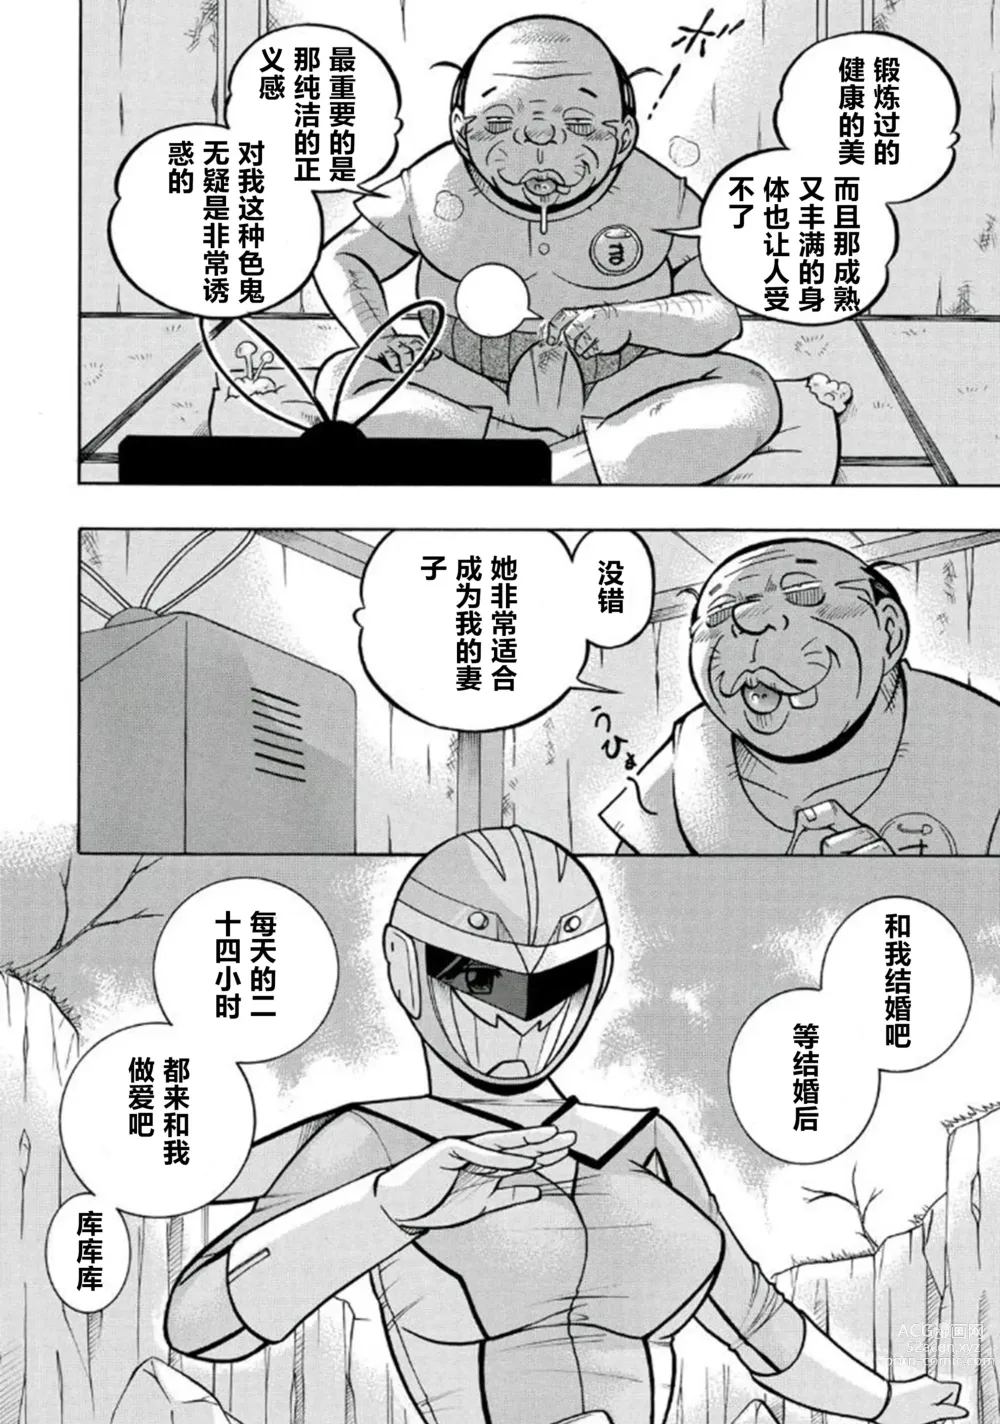 Page 9 of manga Pink Kuppuku - Pink Surrender